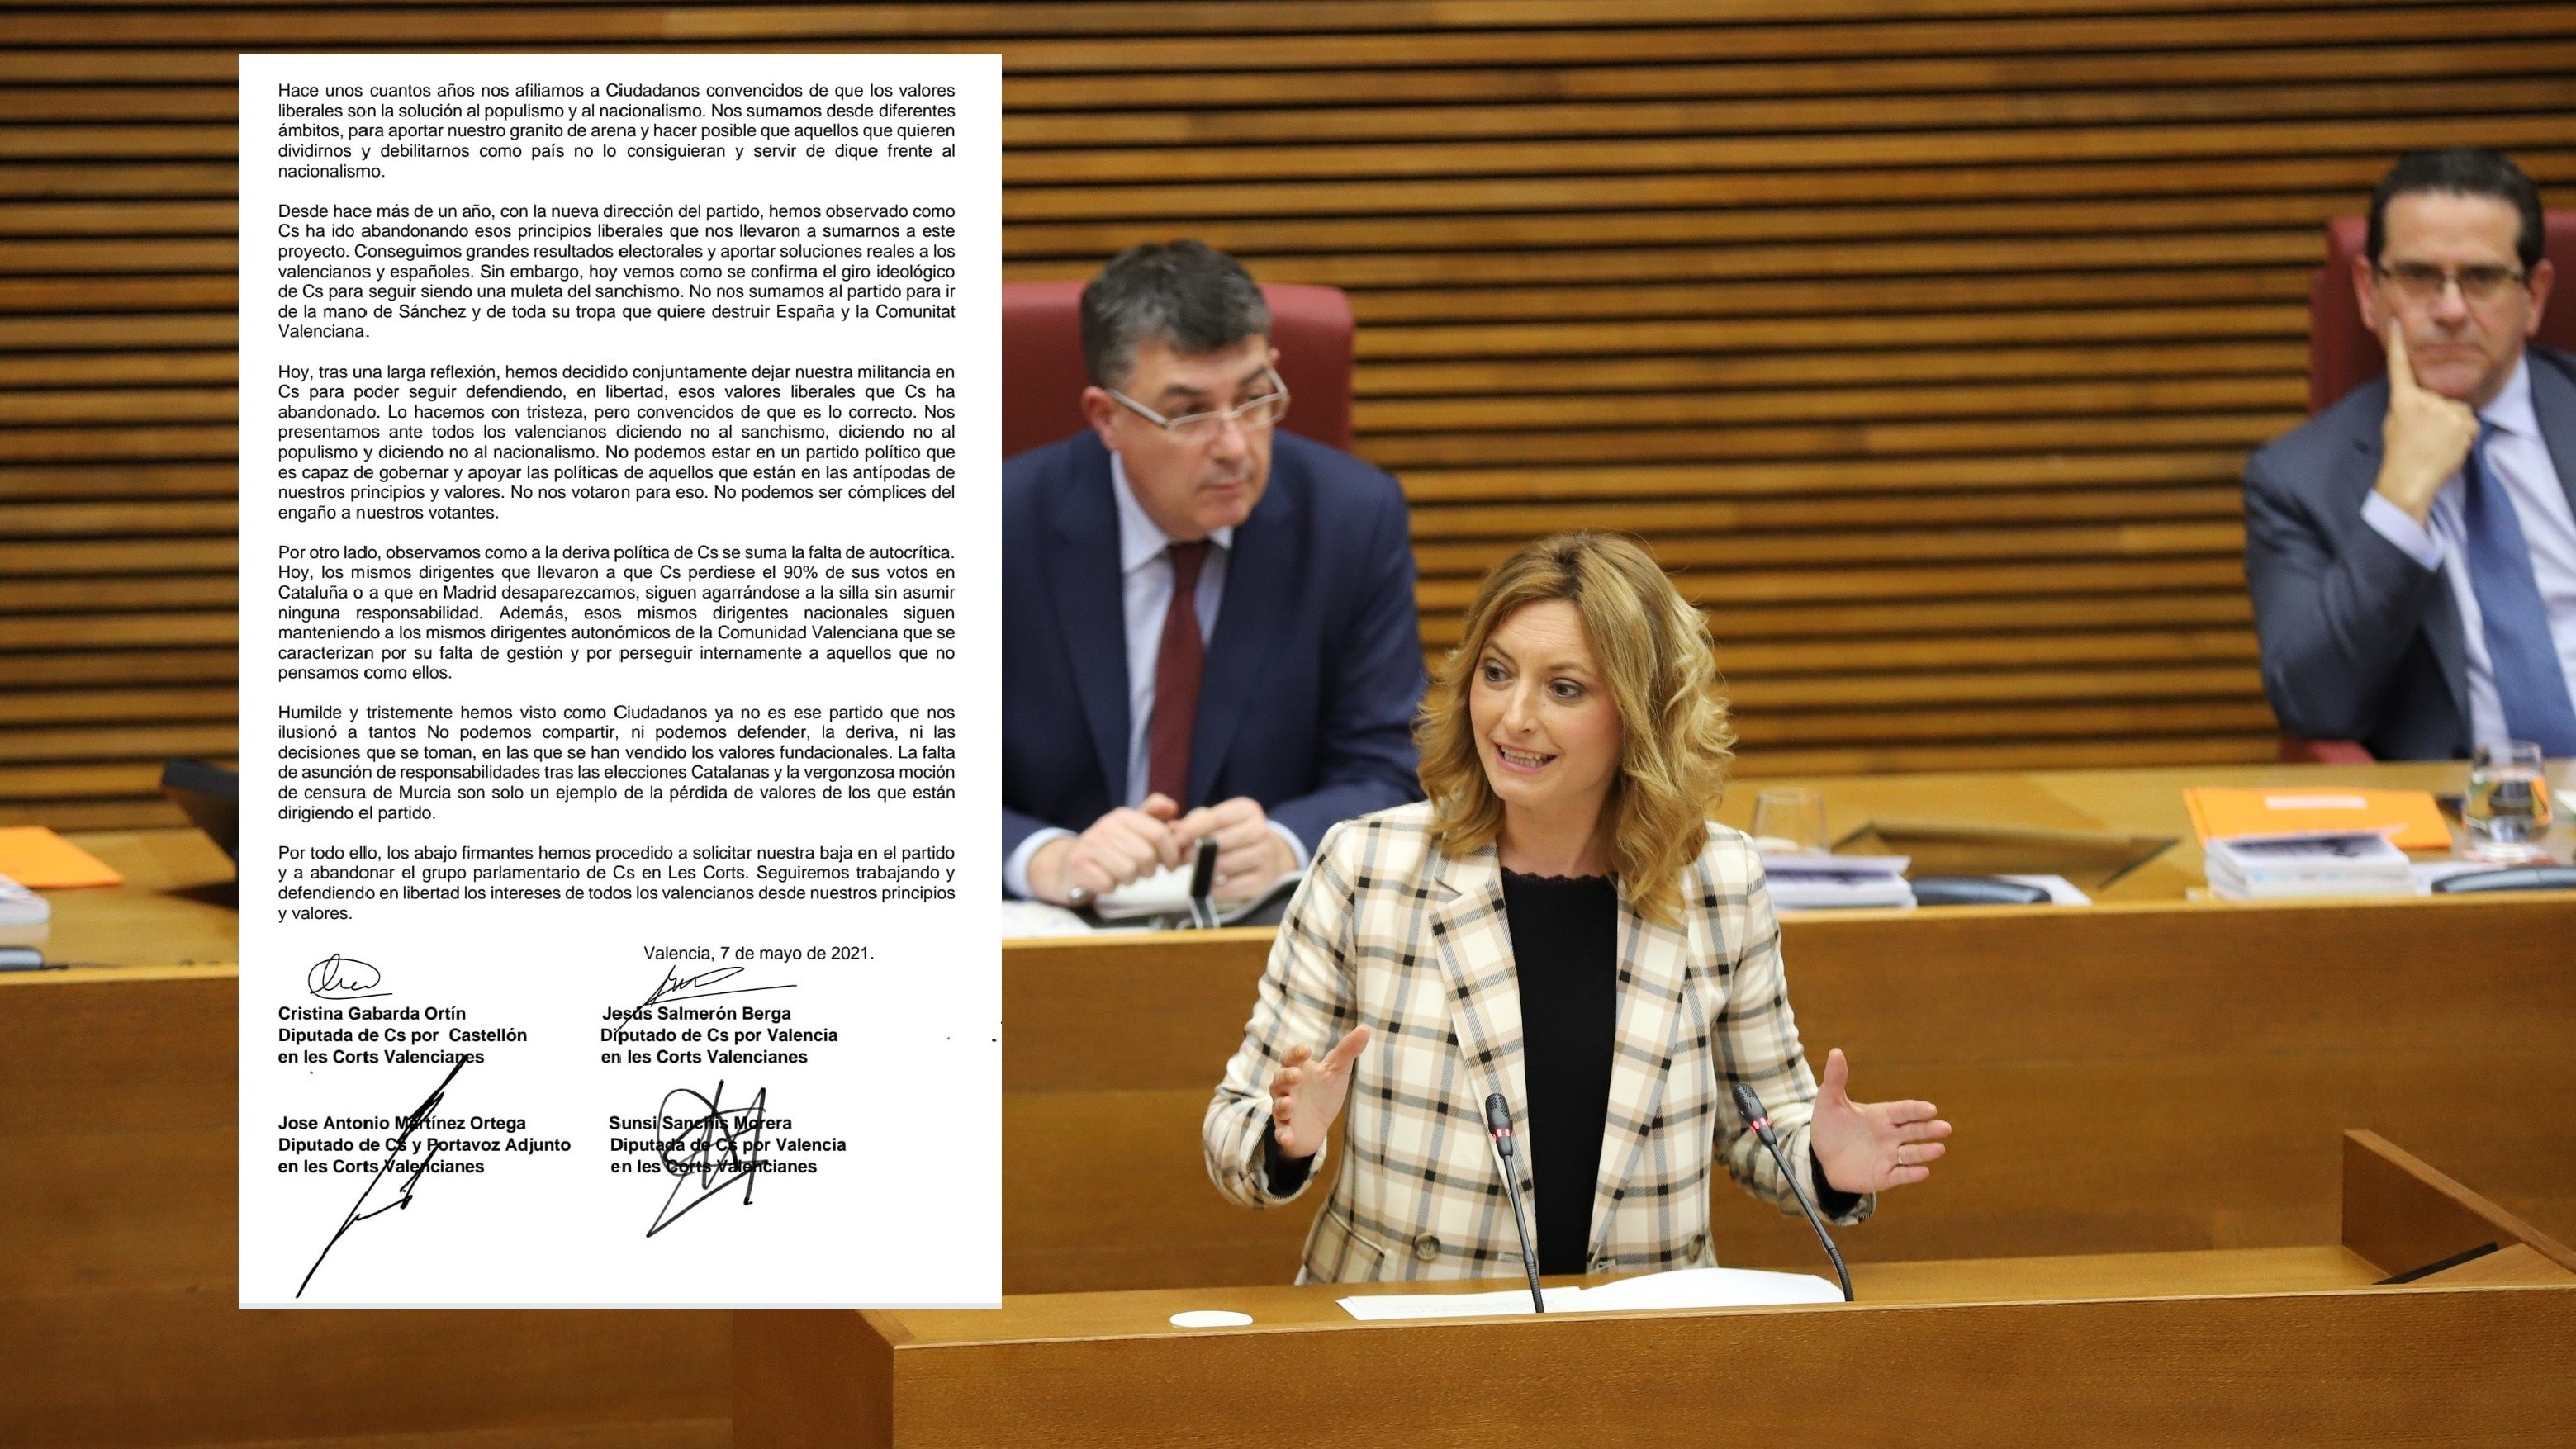 Cuatro diputados abandonan el grupo de Ciudadanos en el parlamento valenciano